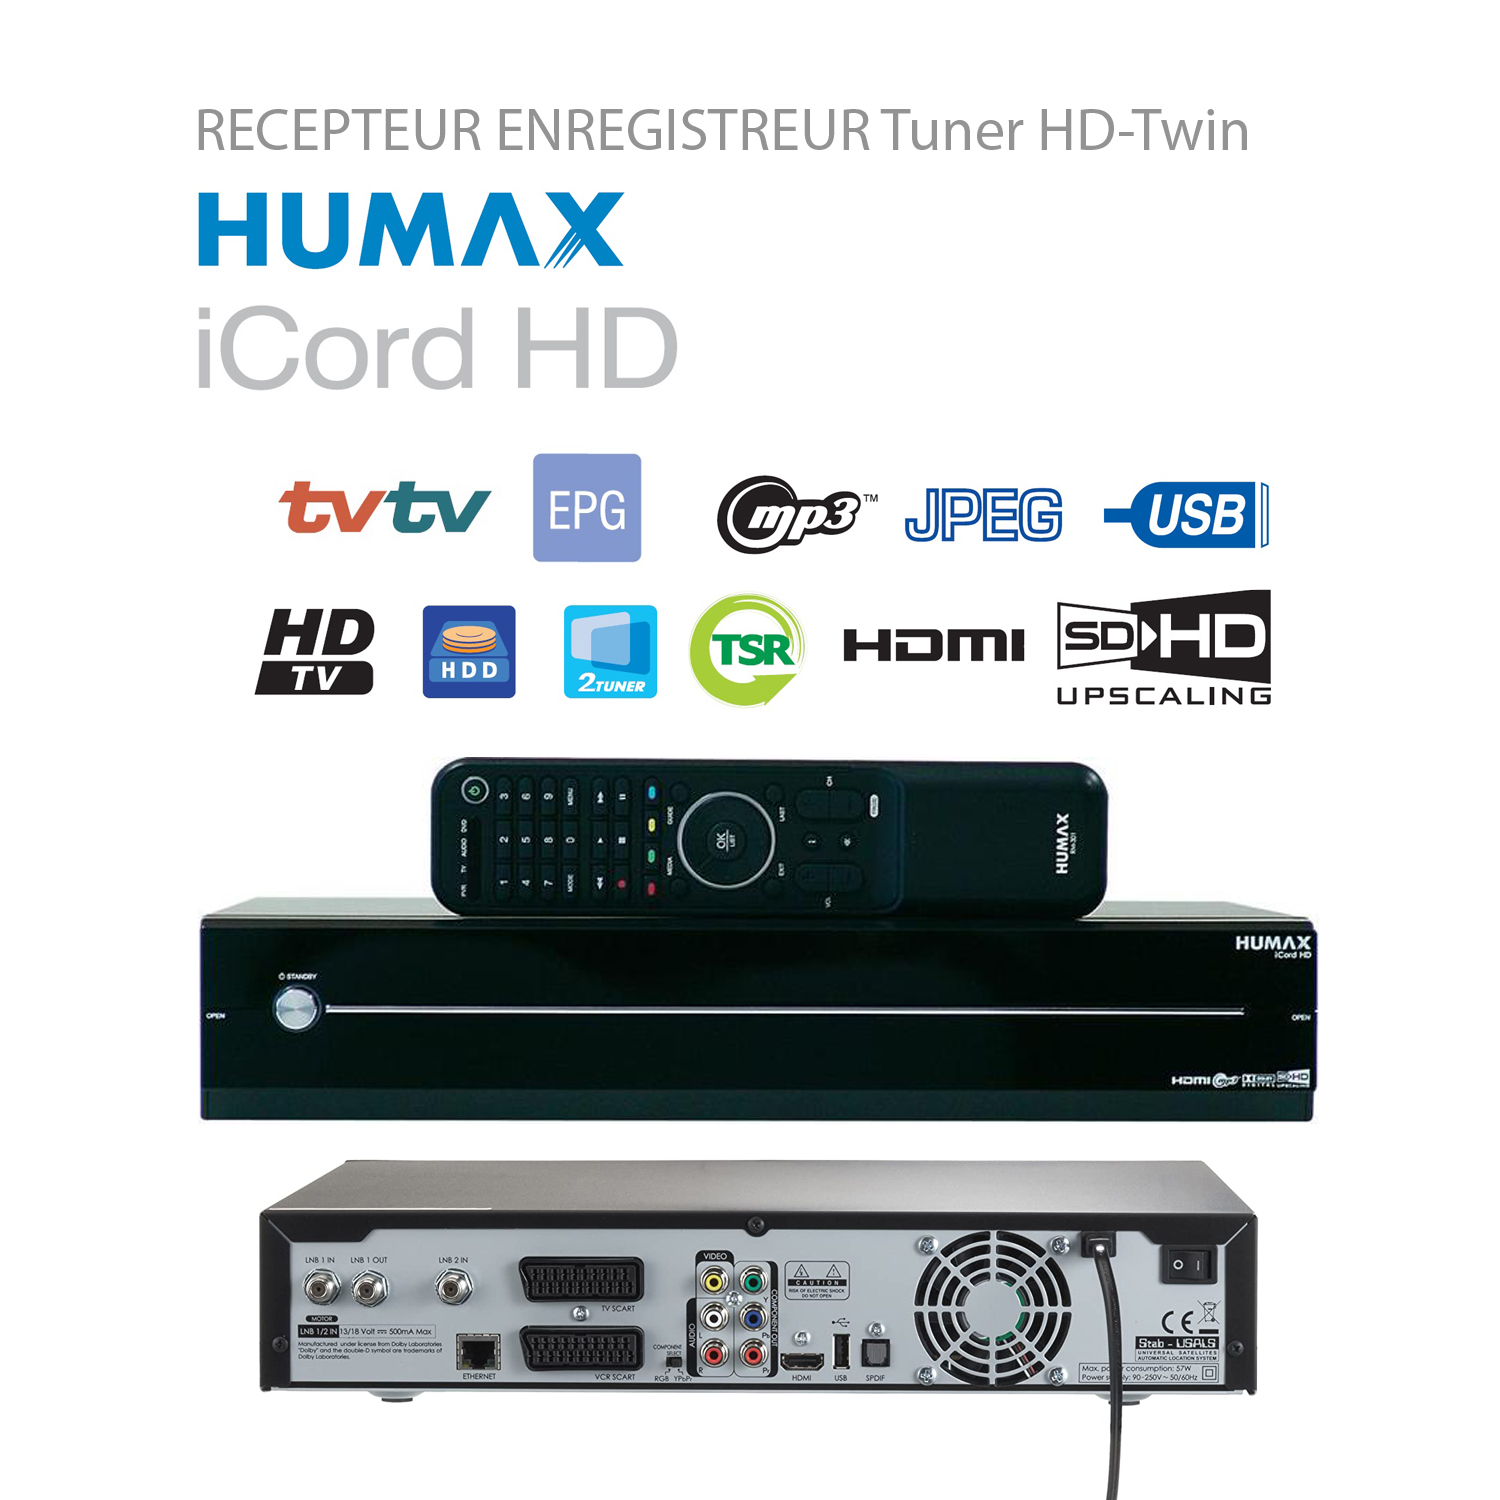 Récepteur Enregistreur Double Tuner HD Humax iCord HD 500GB - Fonction Timeshift Multimédia Enregistrement 4 programmes Freesat HD